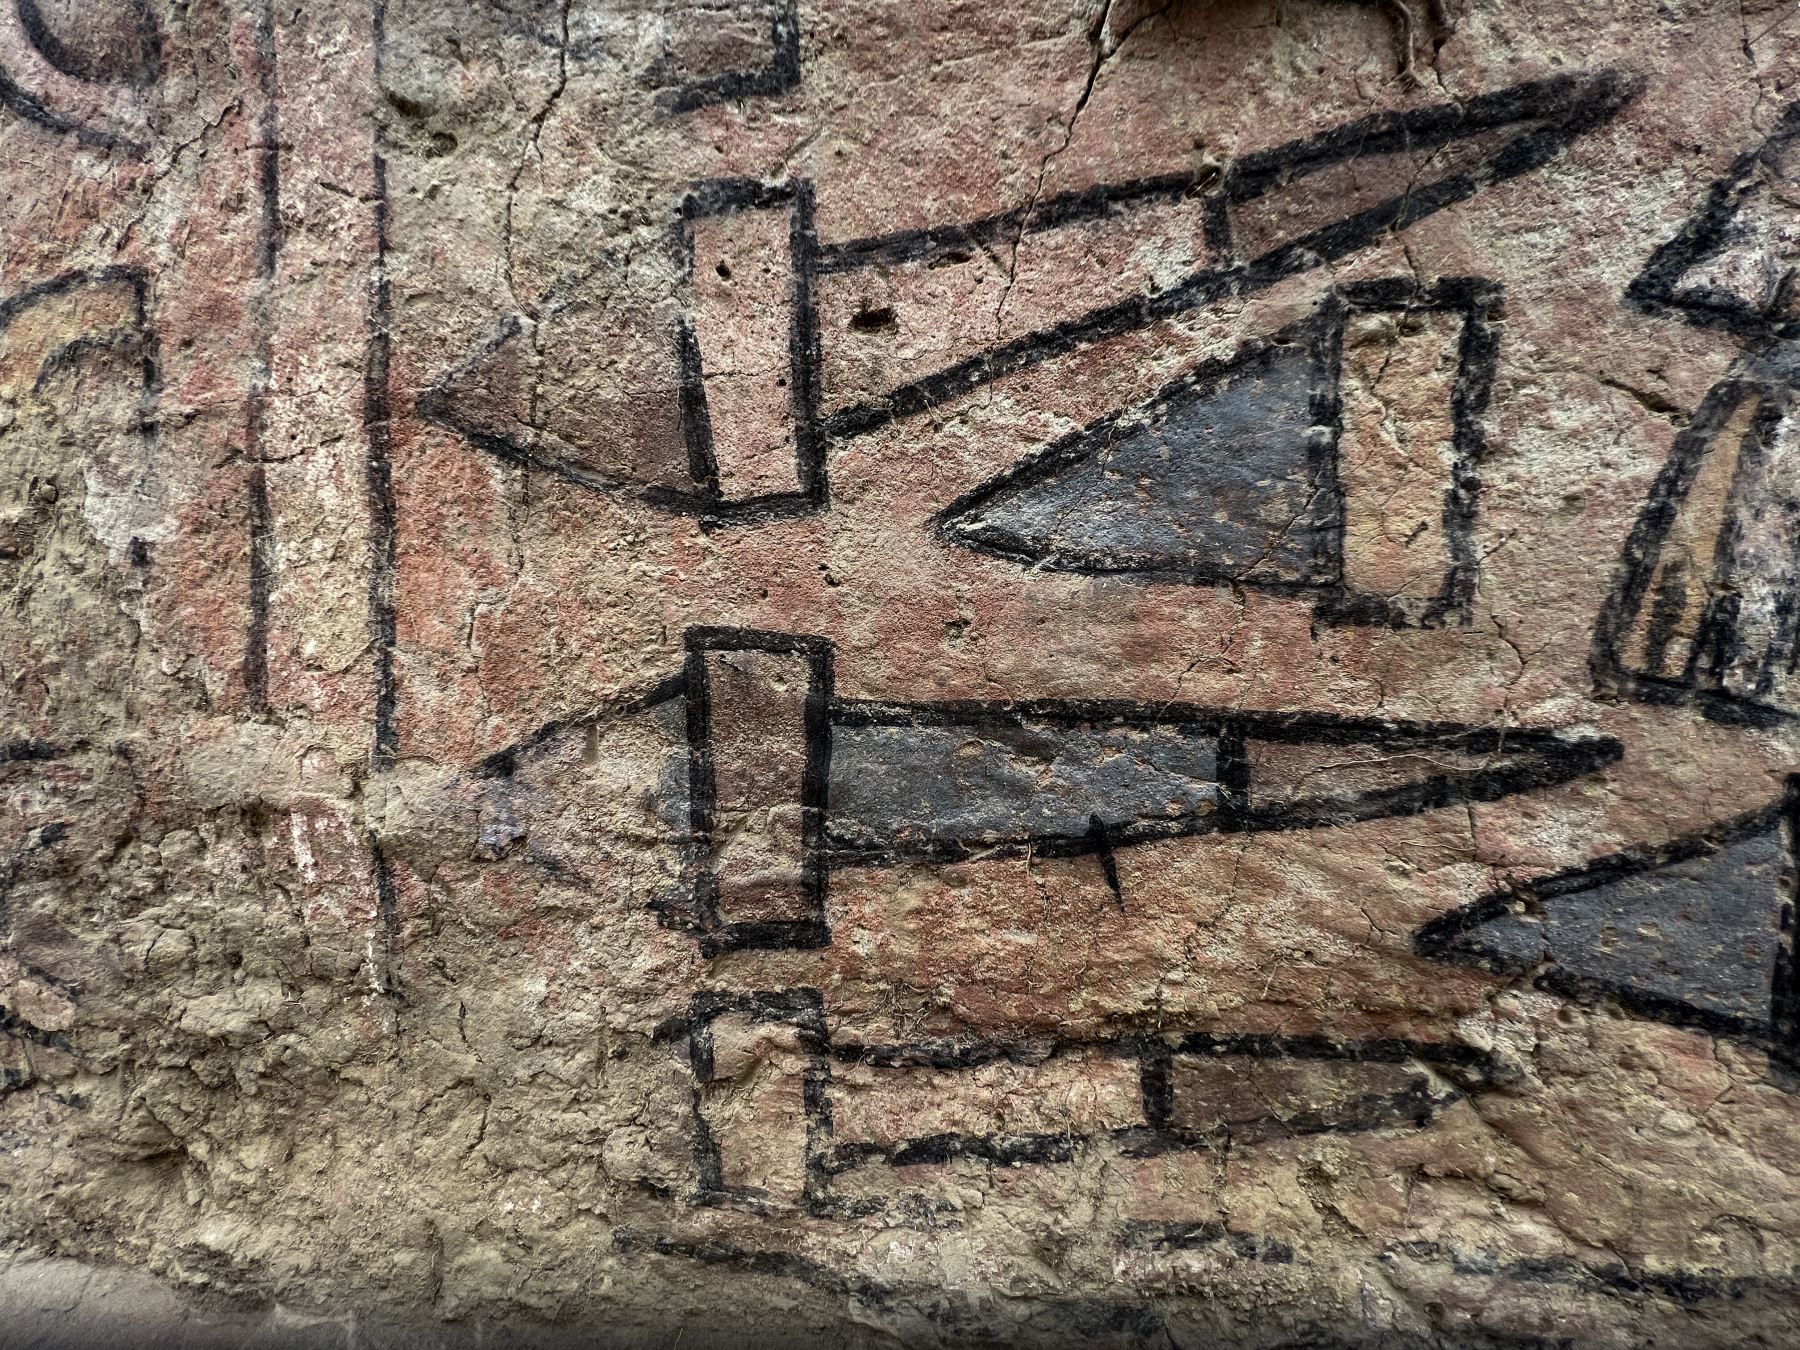 En el fragmento del mural hallado, de unos 30 metros de largo, se aprecian con nitidez los colores azul, marrón, rojo, amarillo, negro, blanco y lúcuma (amarillo mostaza) con los que se pintó originalmente. 
Foto: AFP